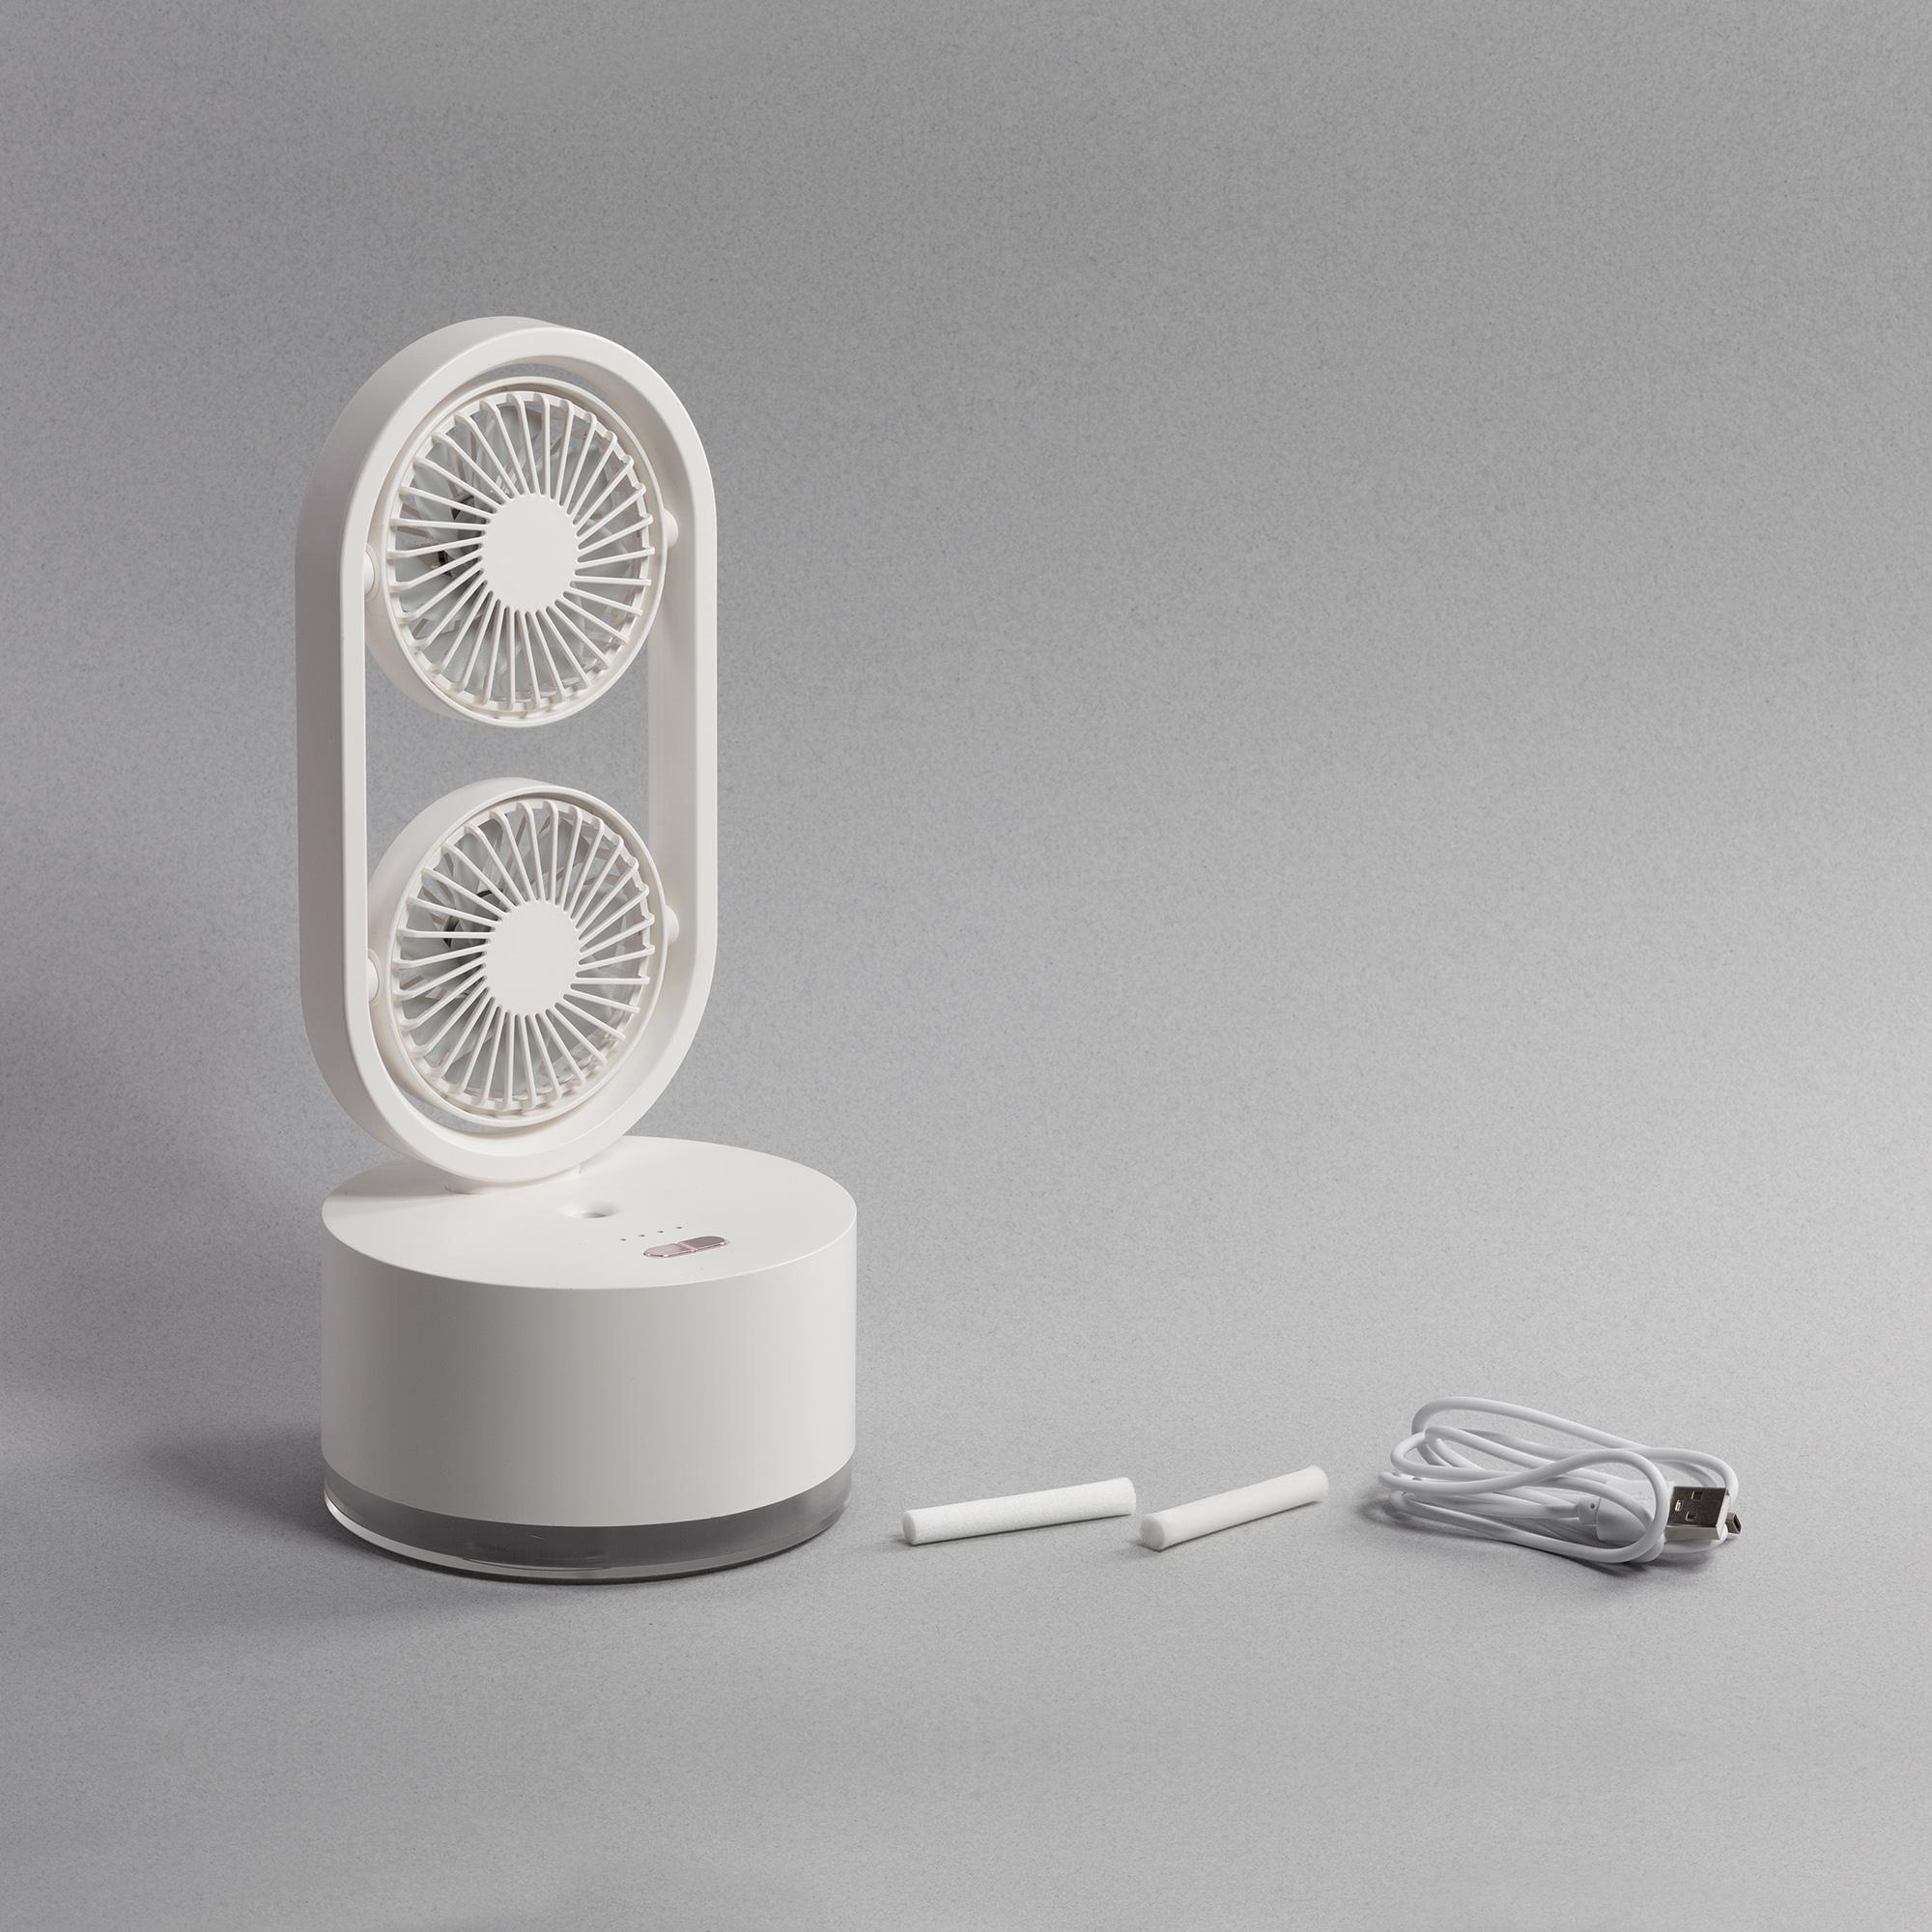 Портативный увлажнитель воздуха "Smart Wind" с двумя вентиляторами, цвет белый, фото 4